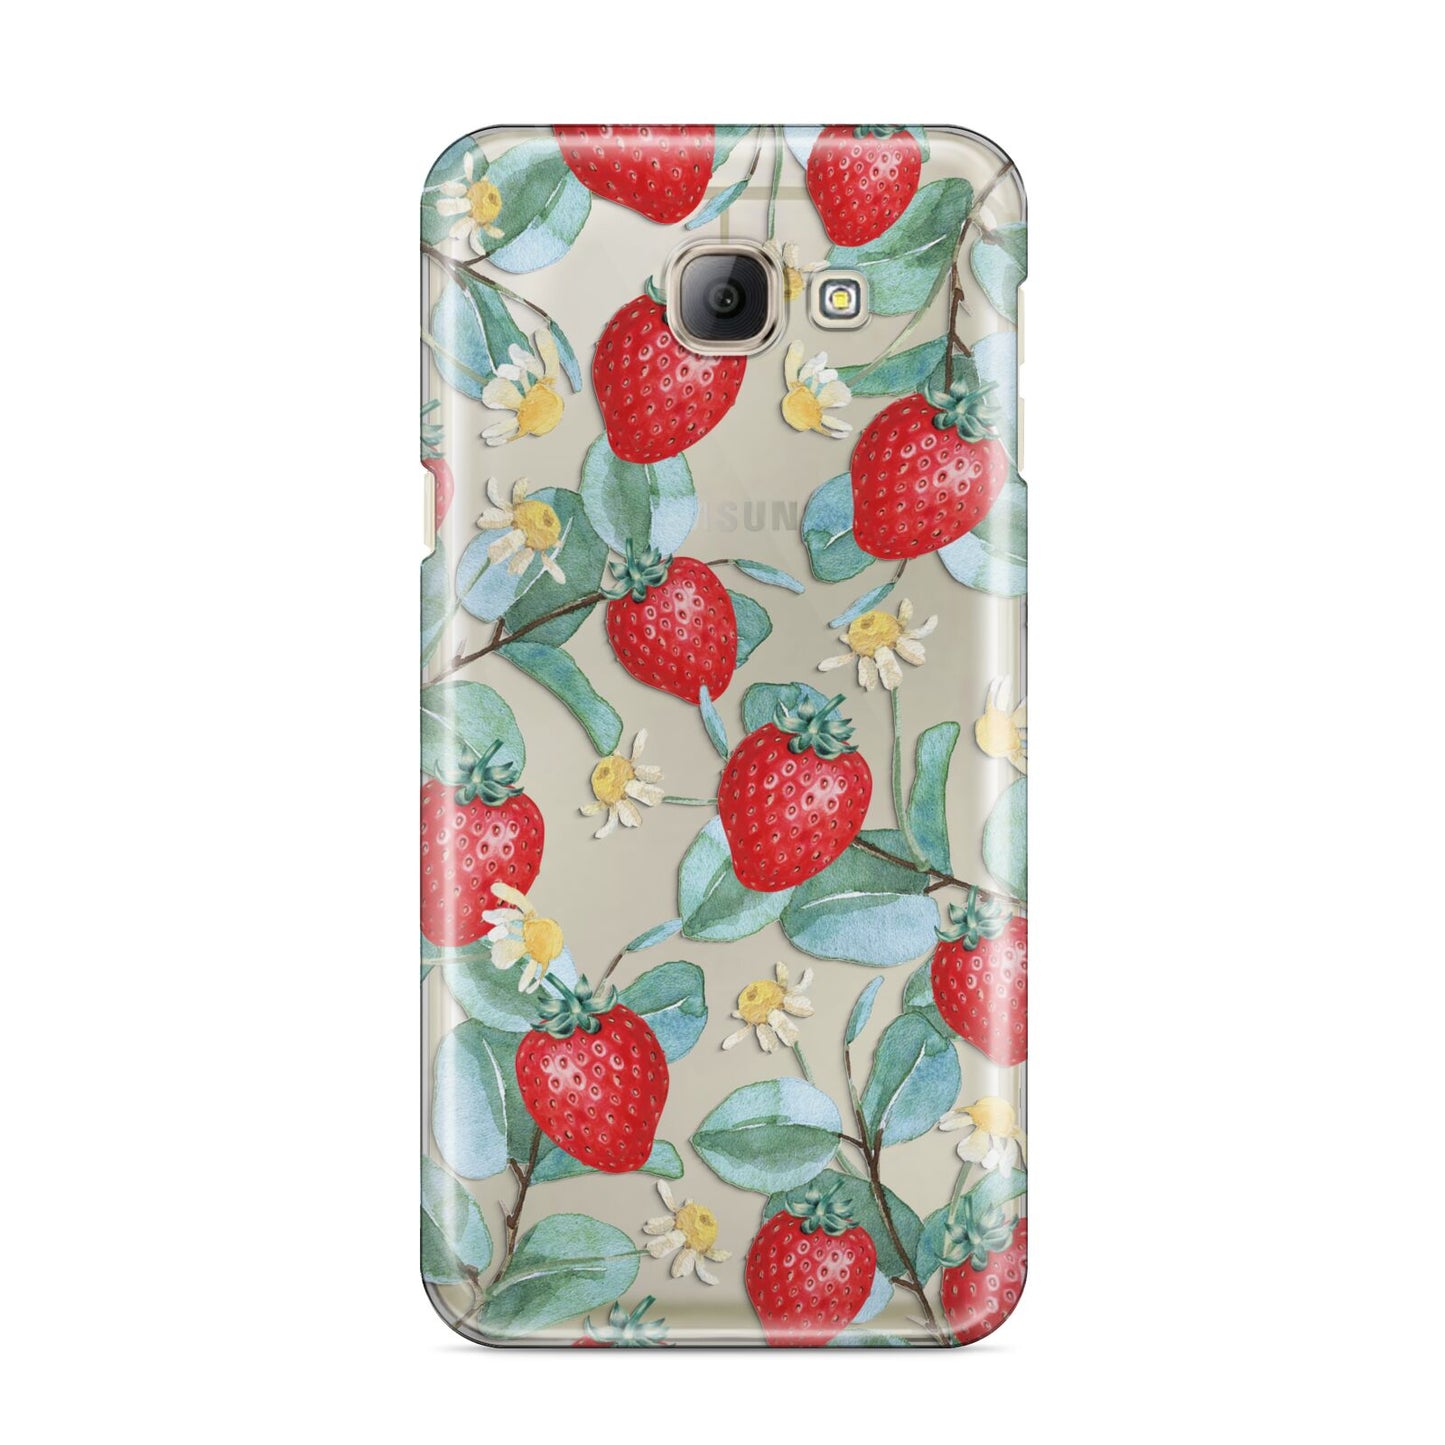 Strawberry Plant Samsung Galaxy A8 2016 Case